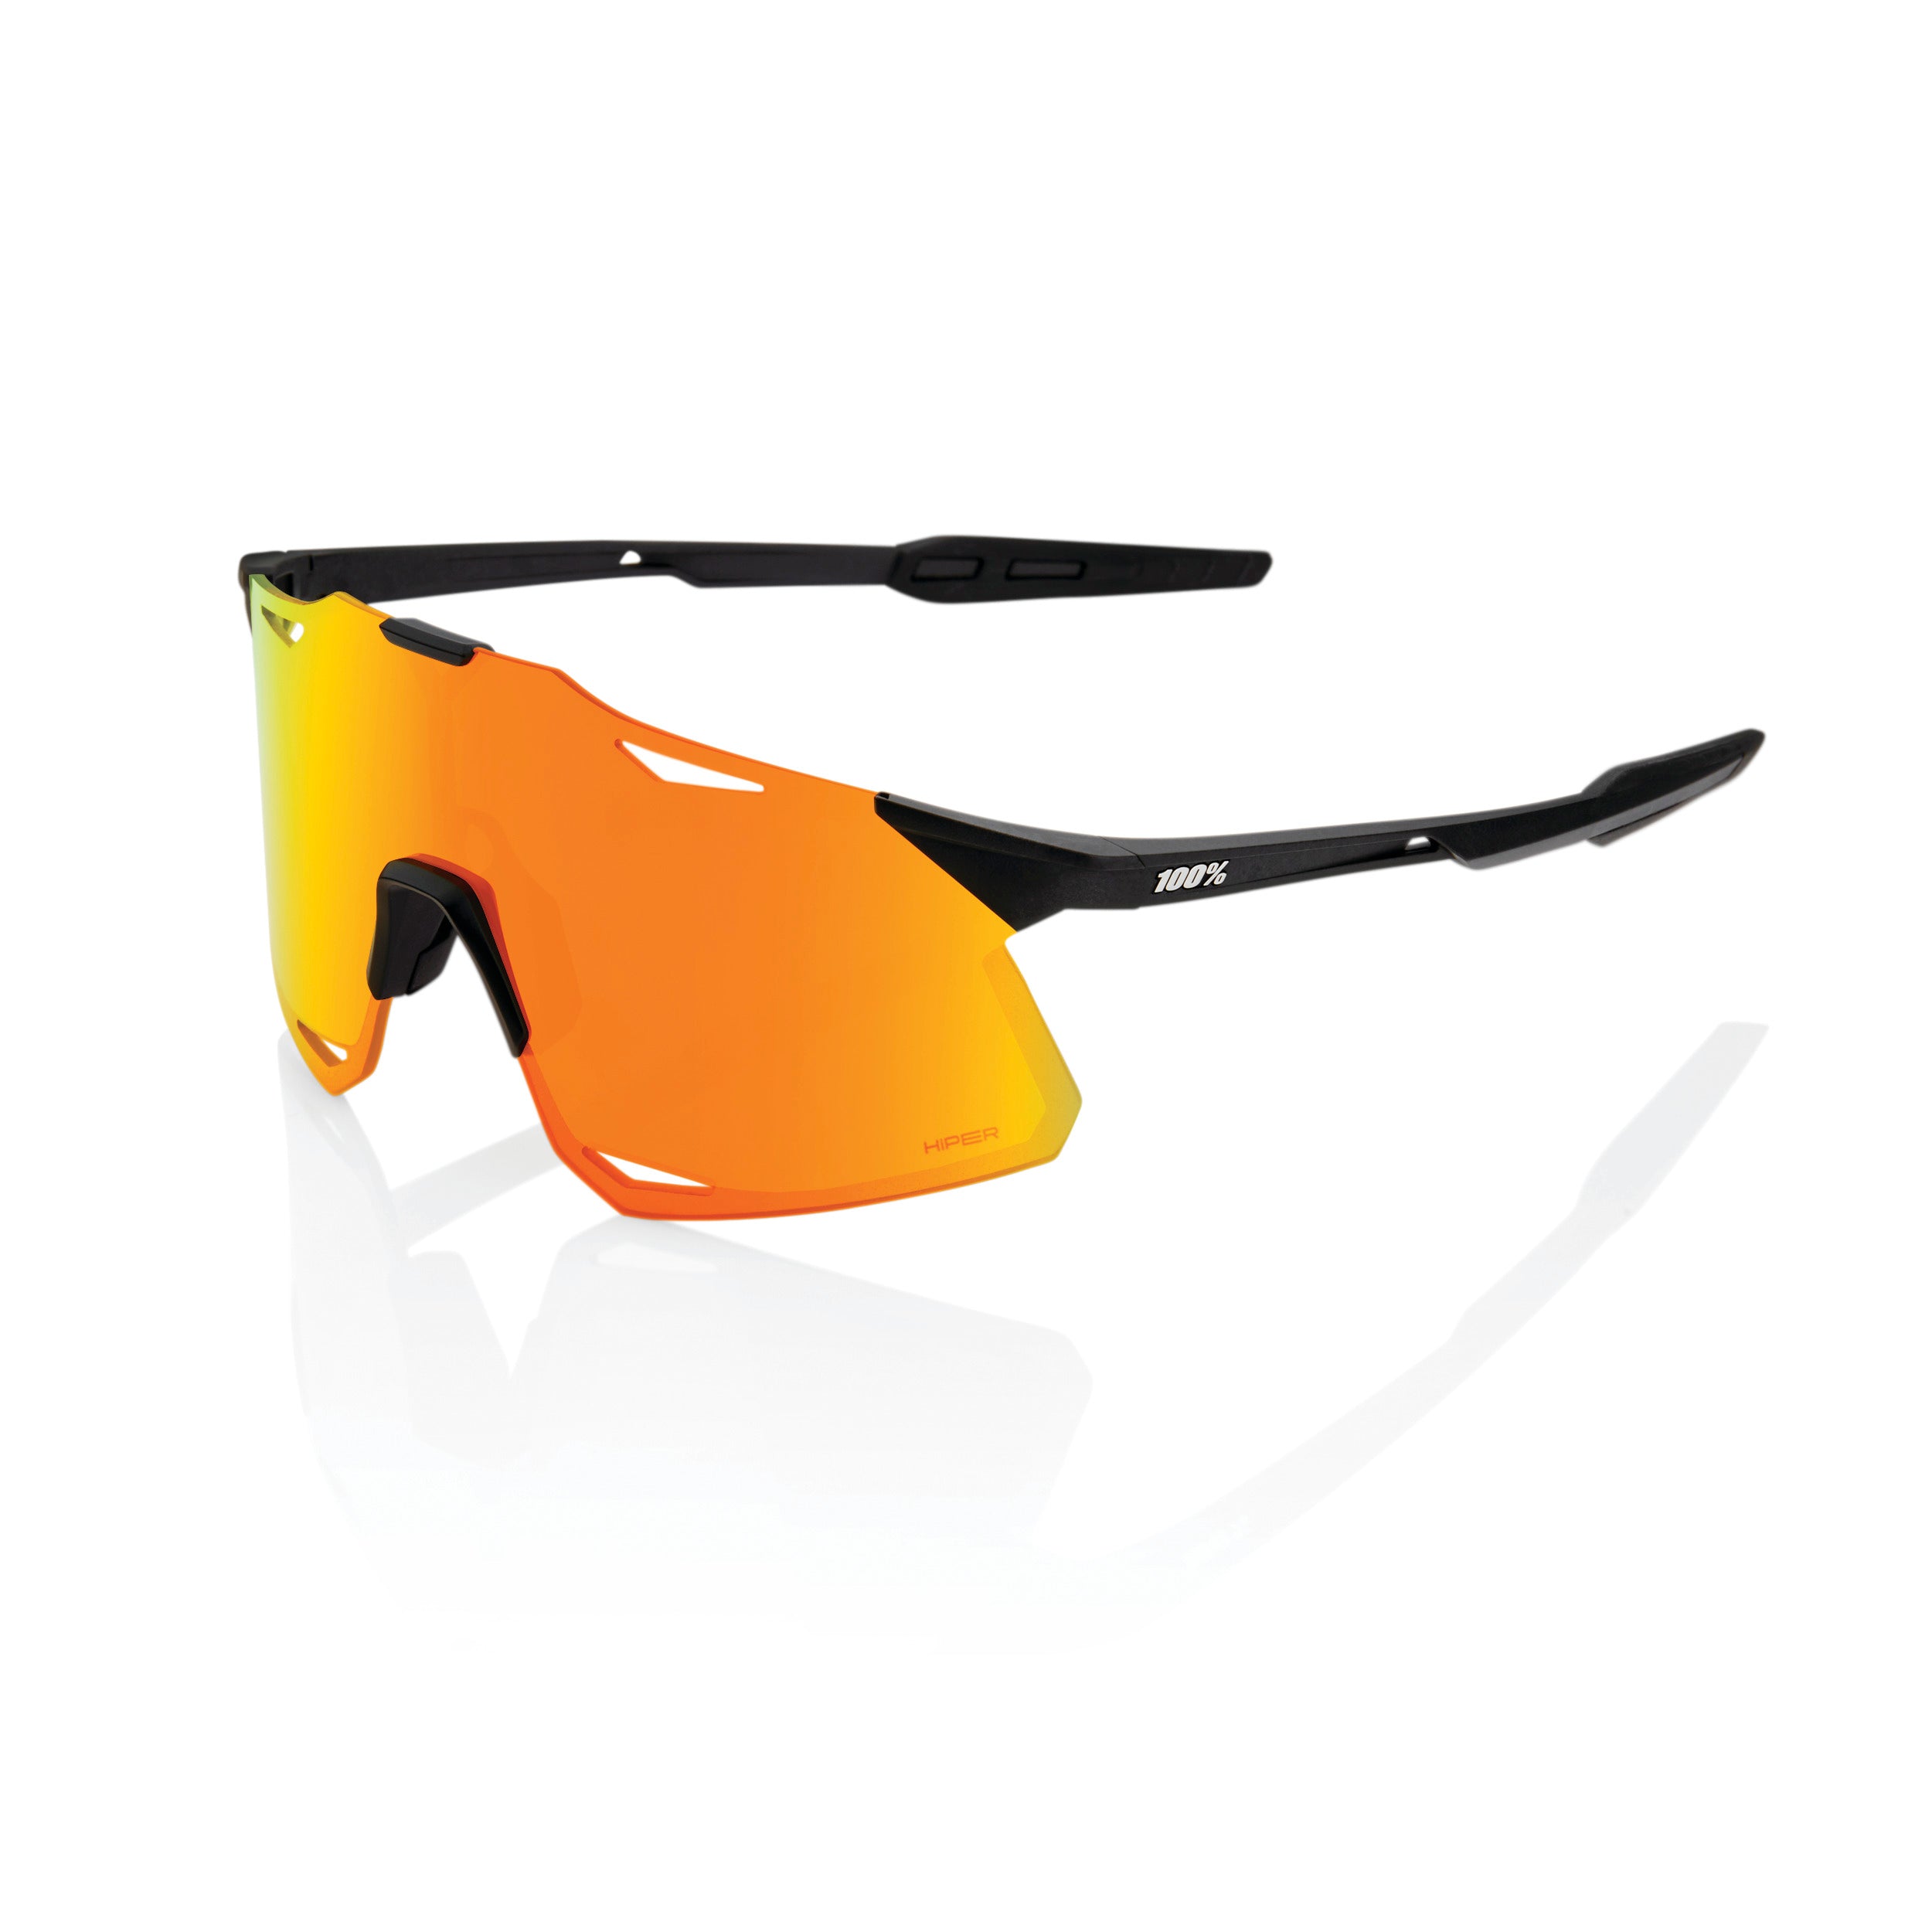 100% HYPERCRAFT Sport Performance Sunglasses, Matte Black, HiPER Red